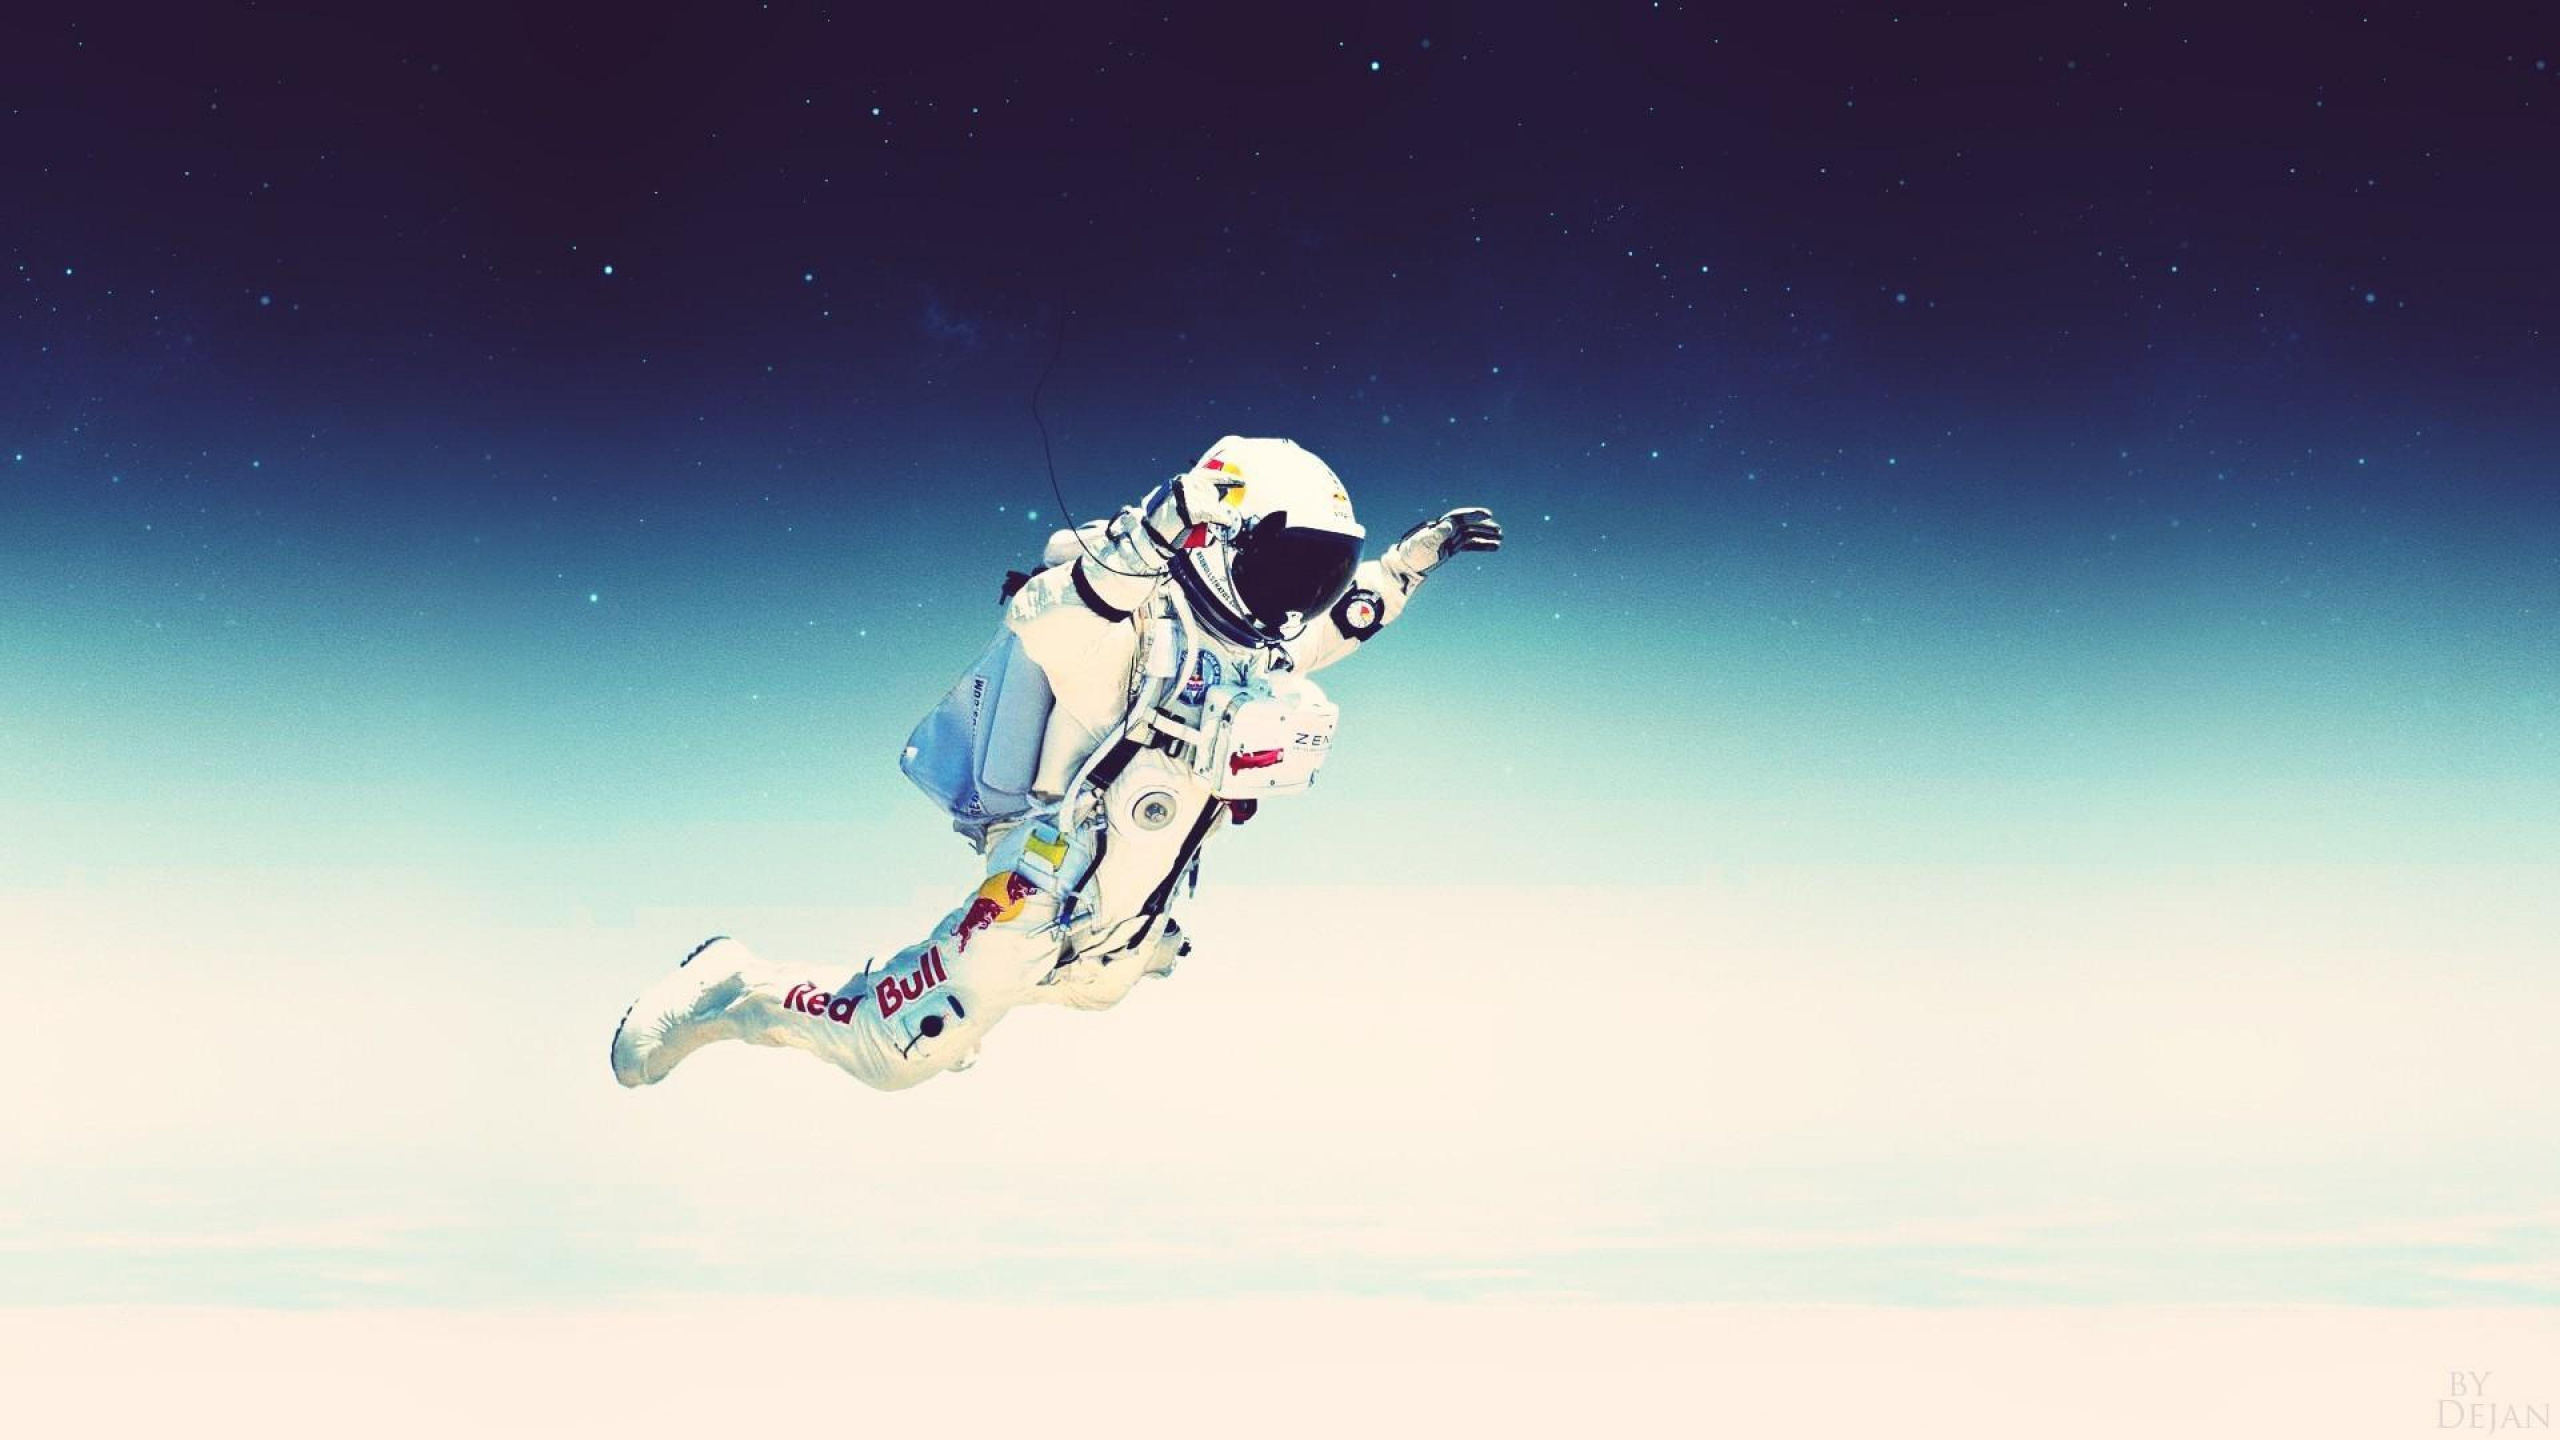 跳跃, 极限运动, 宇航员, 气氛, 空间 壁纸 2560x1440 允许